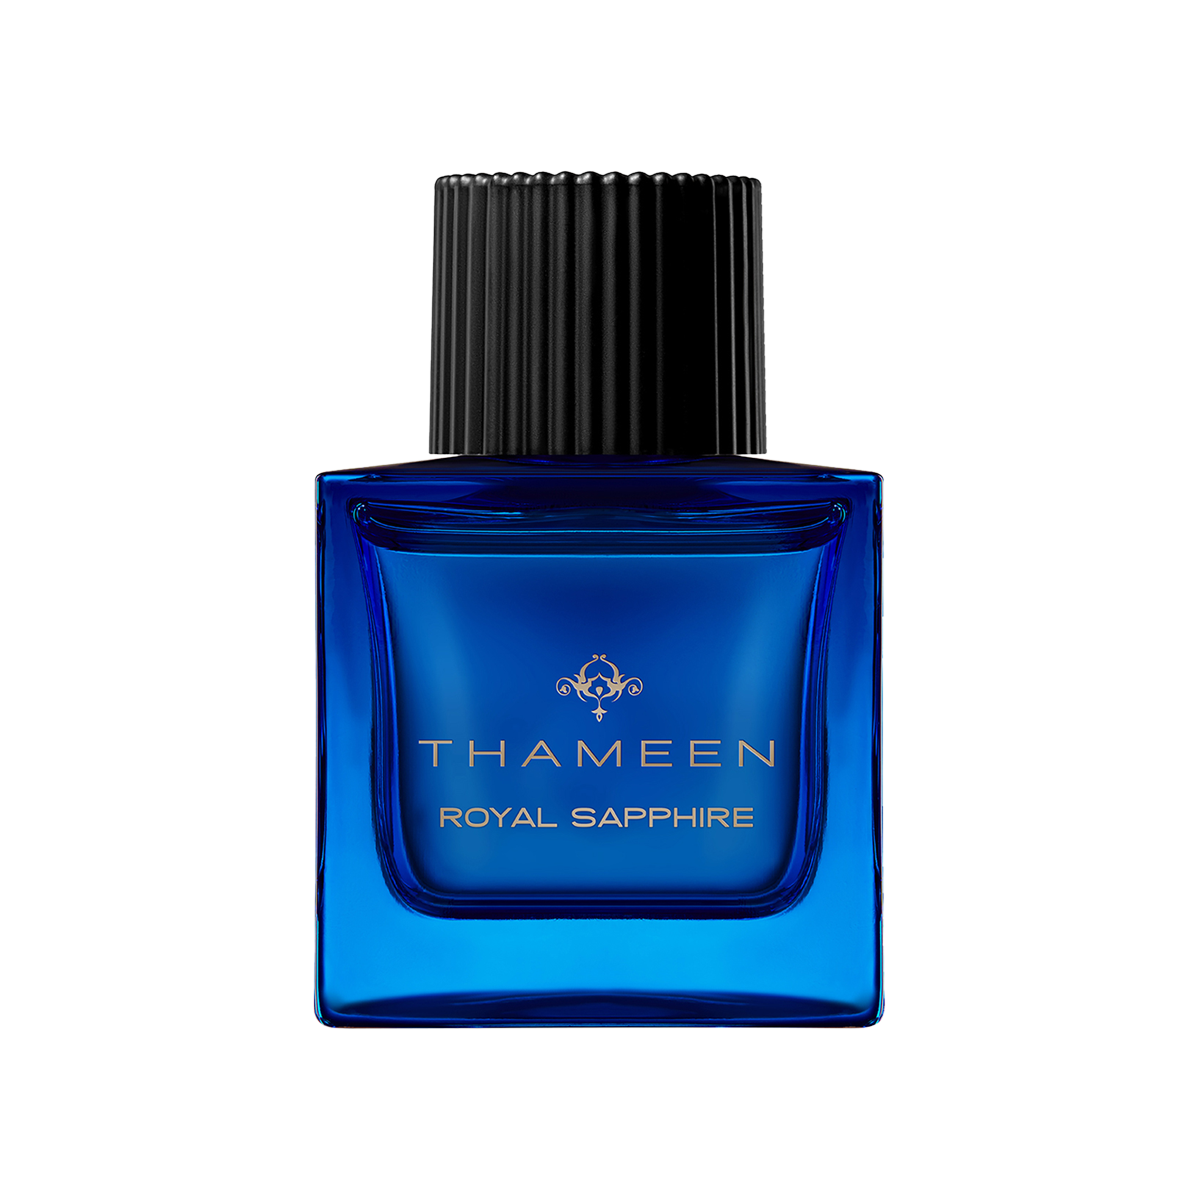 Thameen London - Royal Sapphire Extrait de Parfum